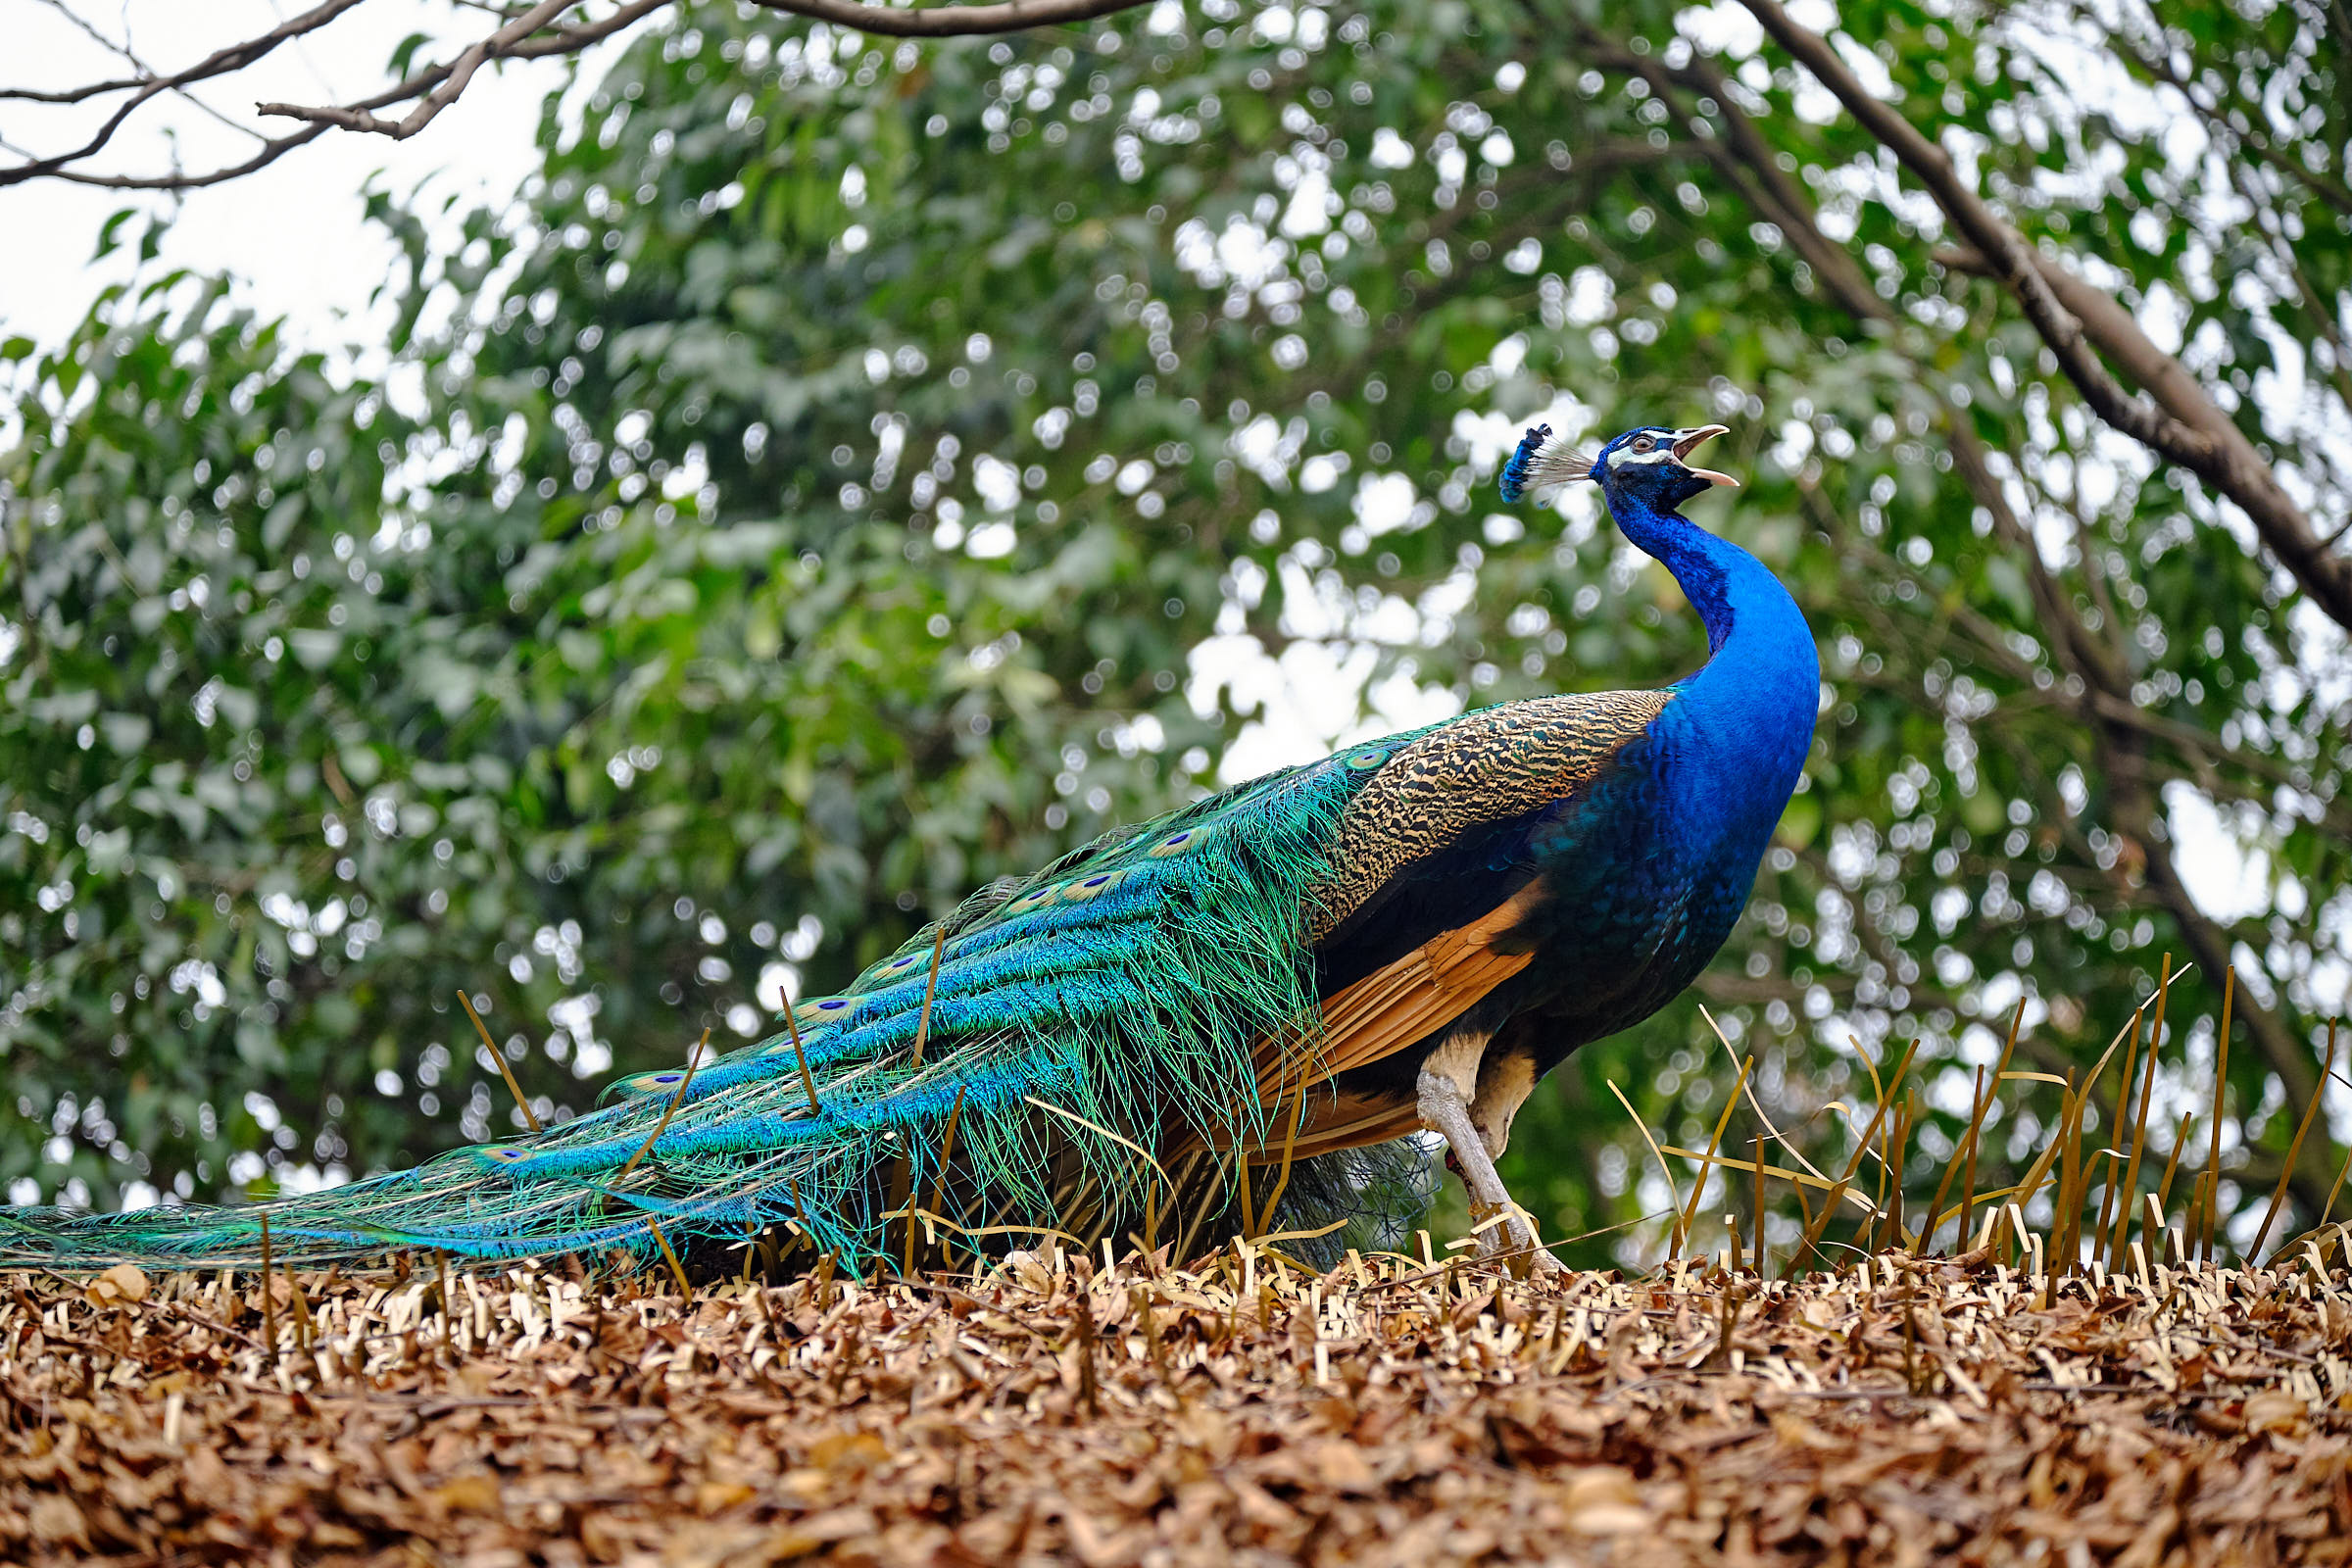 Peacock at Chengdu Panda Reserve